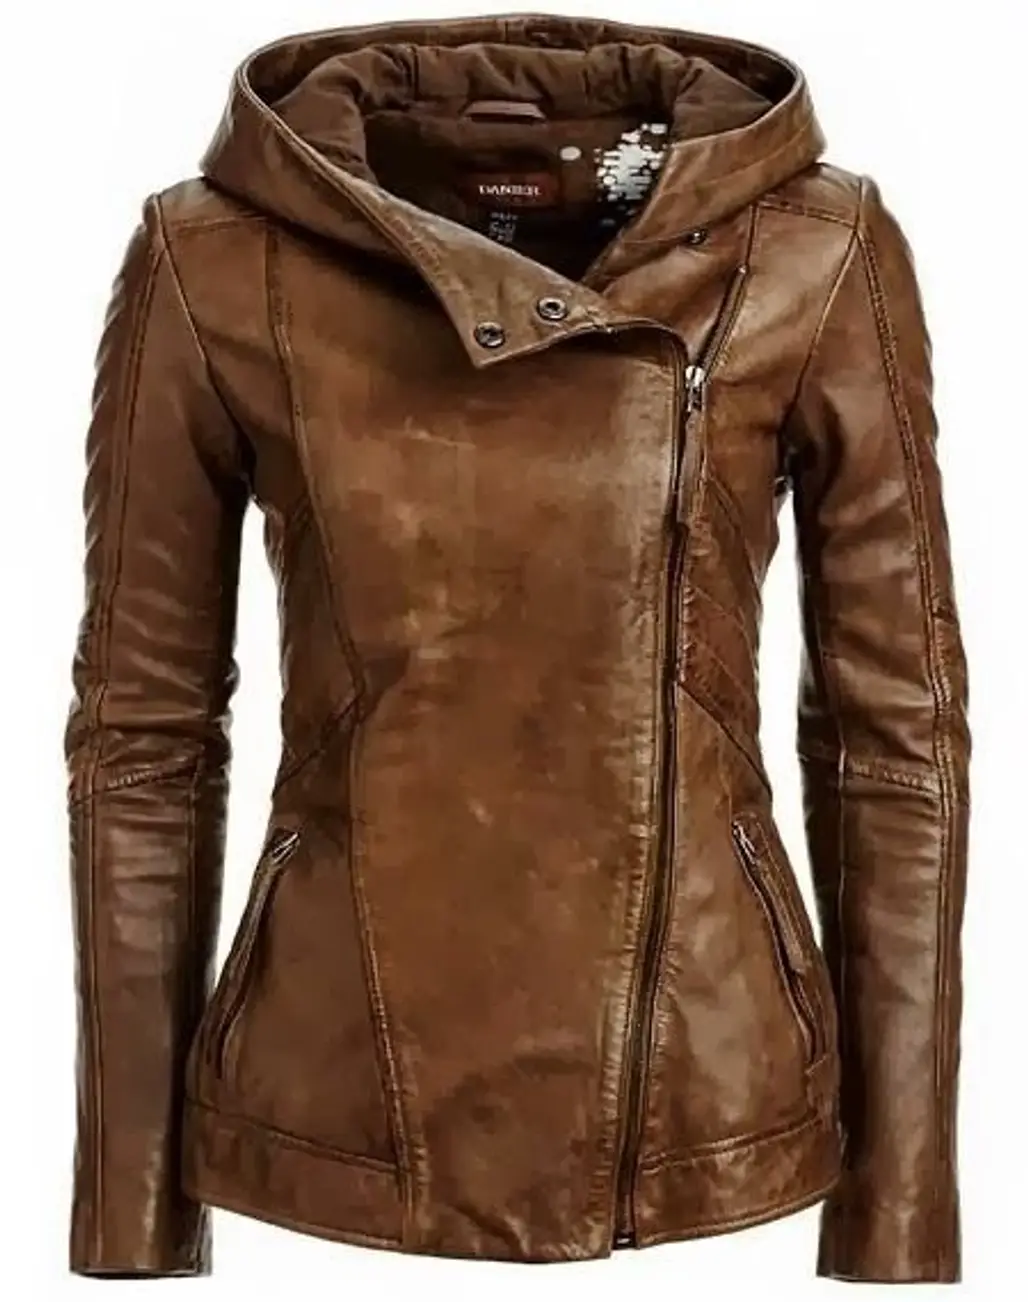 Beautiful Stylish Brown Leather Jacket